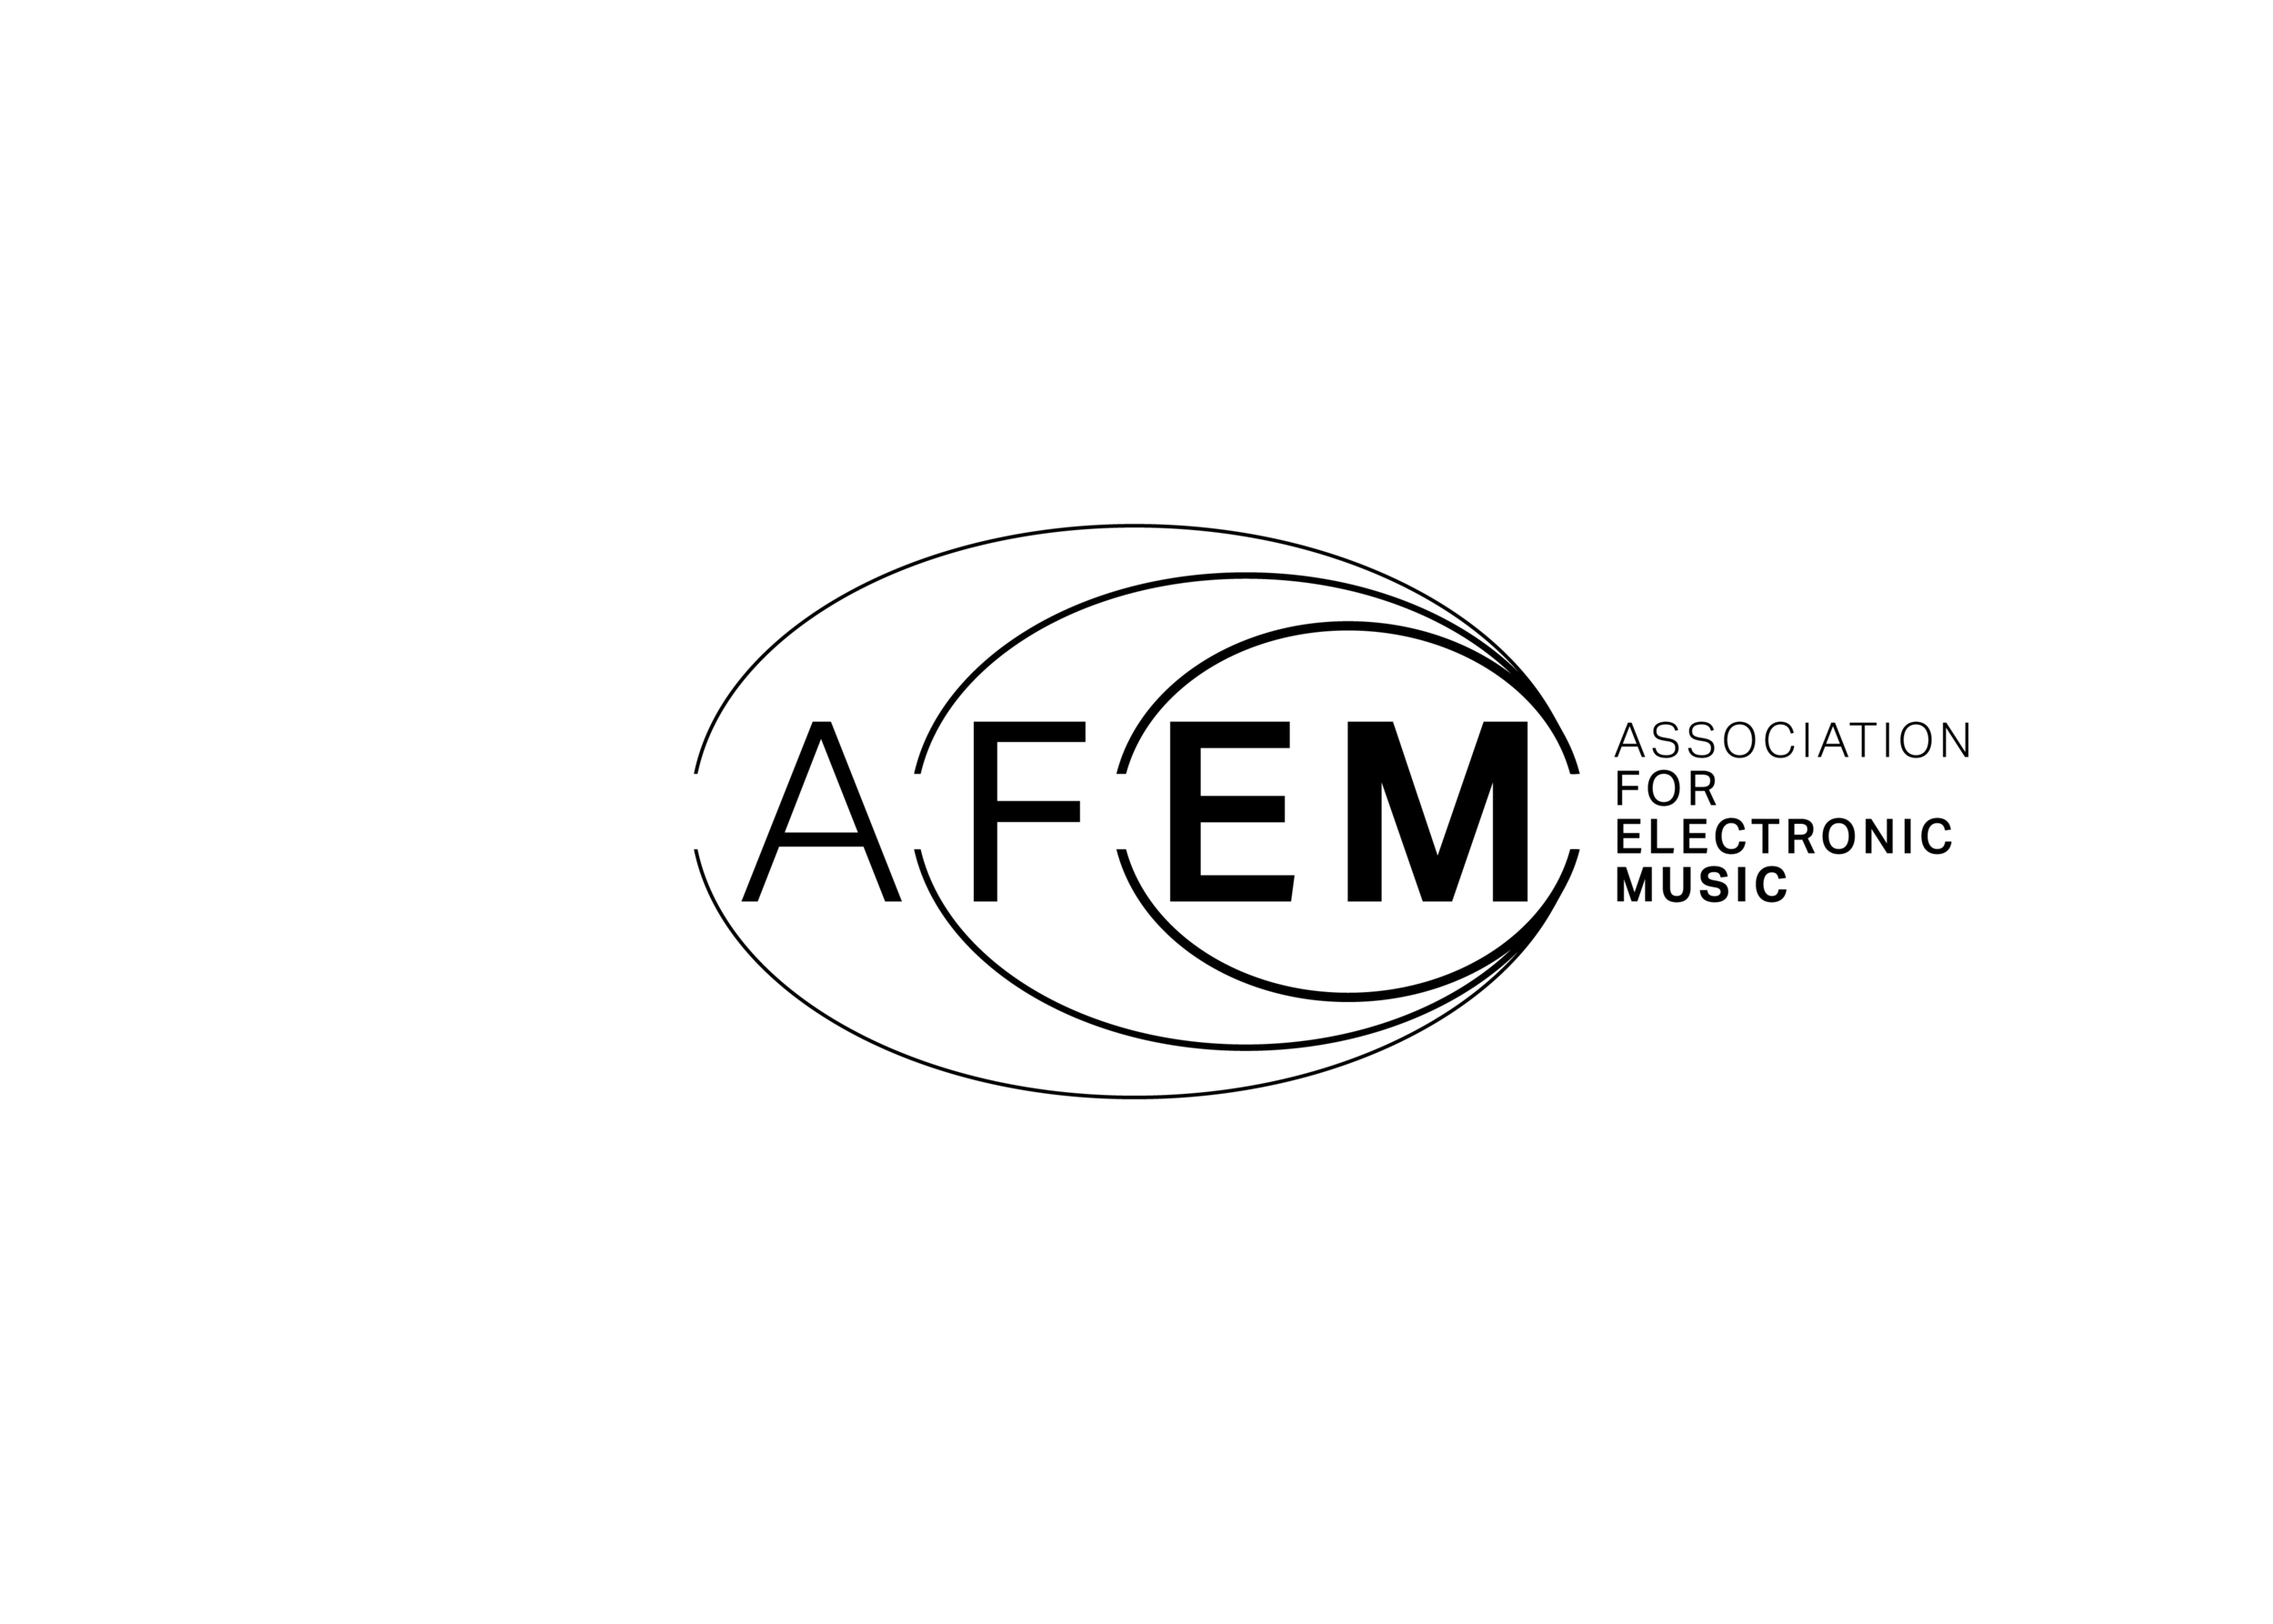 Logotipo AFEM - Arquivos finais8 (Logotipo preto sobre fundo transparente).png